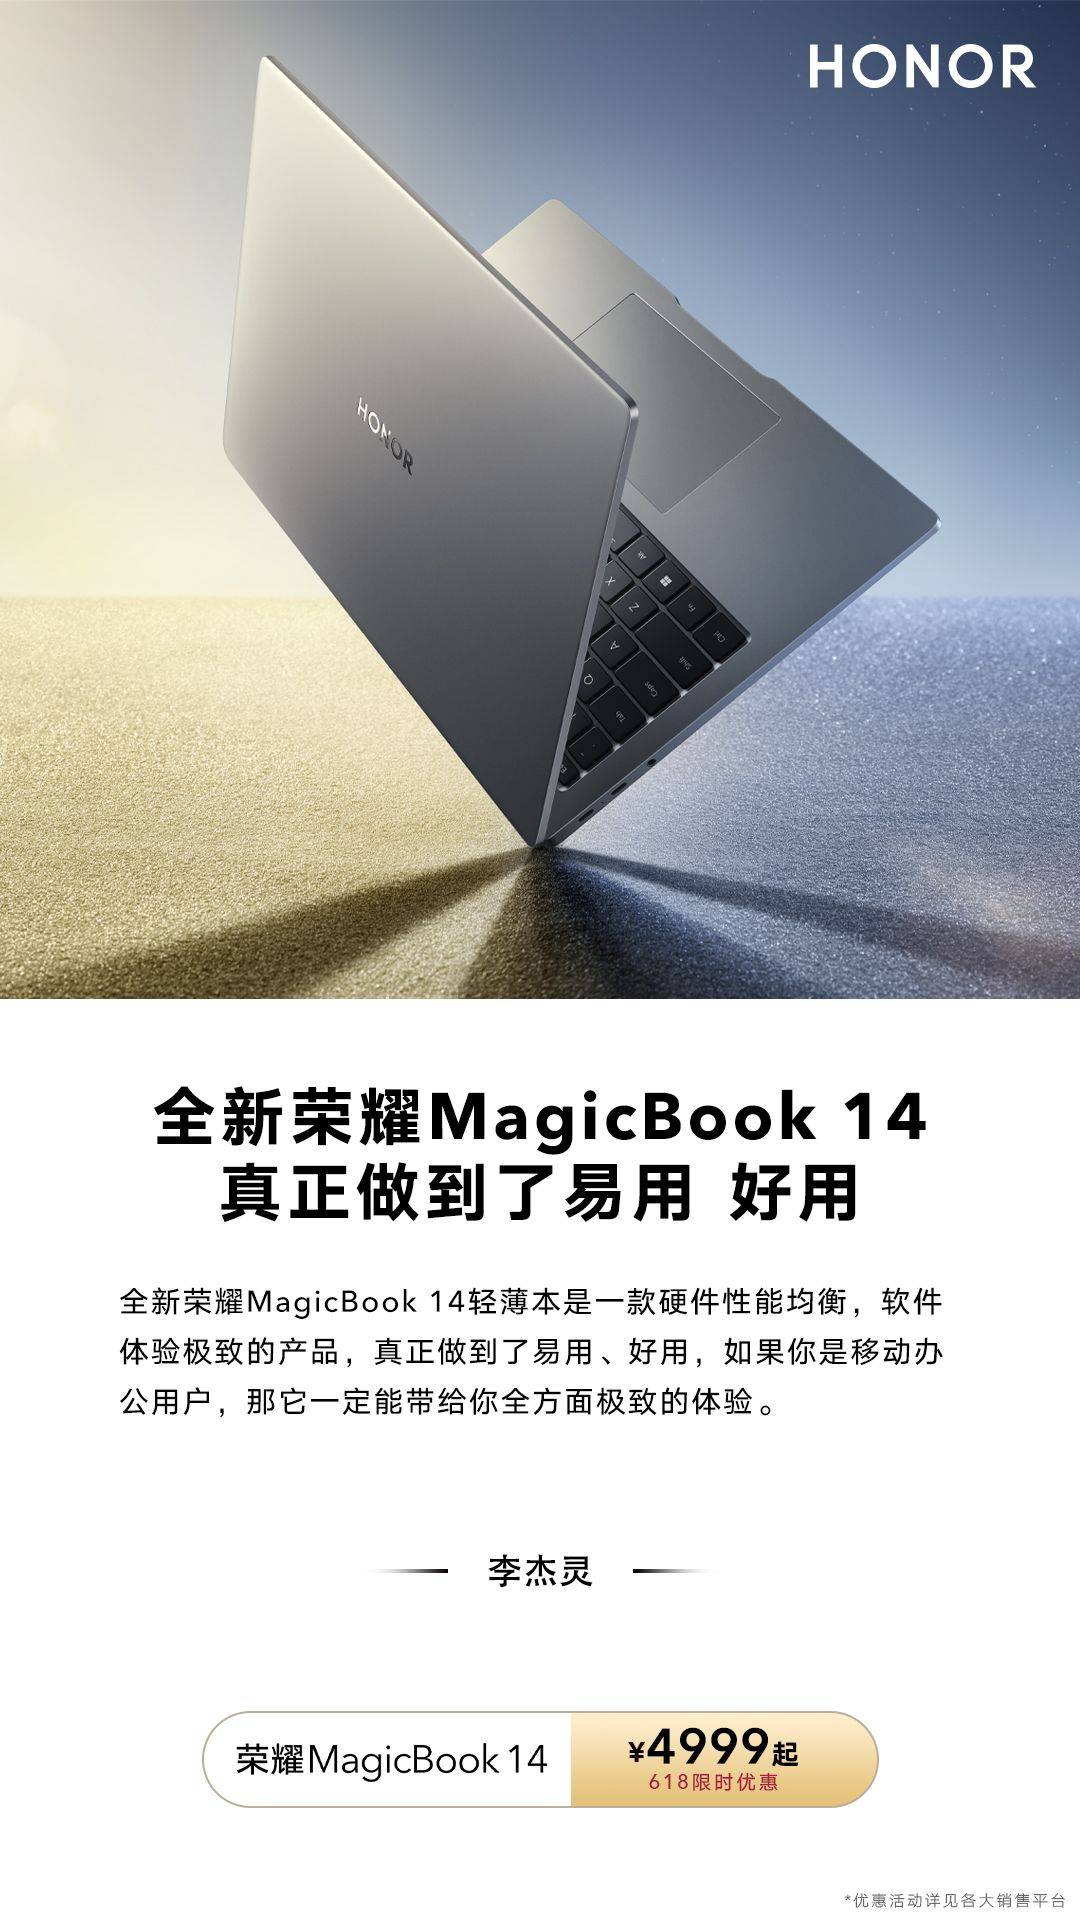 荣耀笔记本MagicBook 系列，今夏不容错过的便携生产力工具